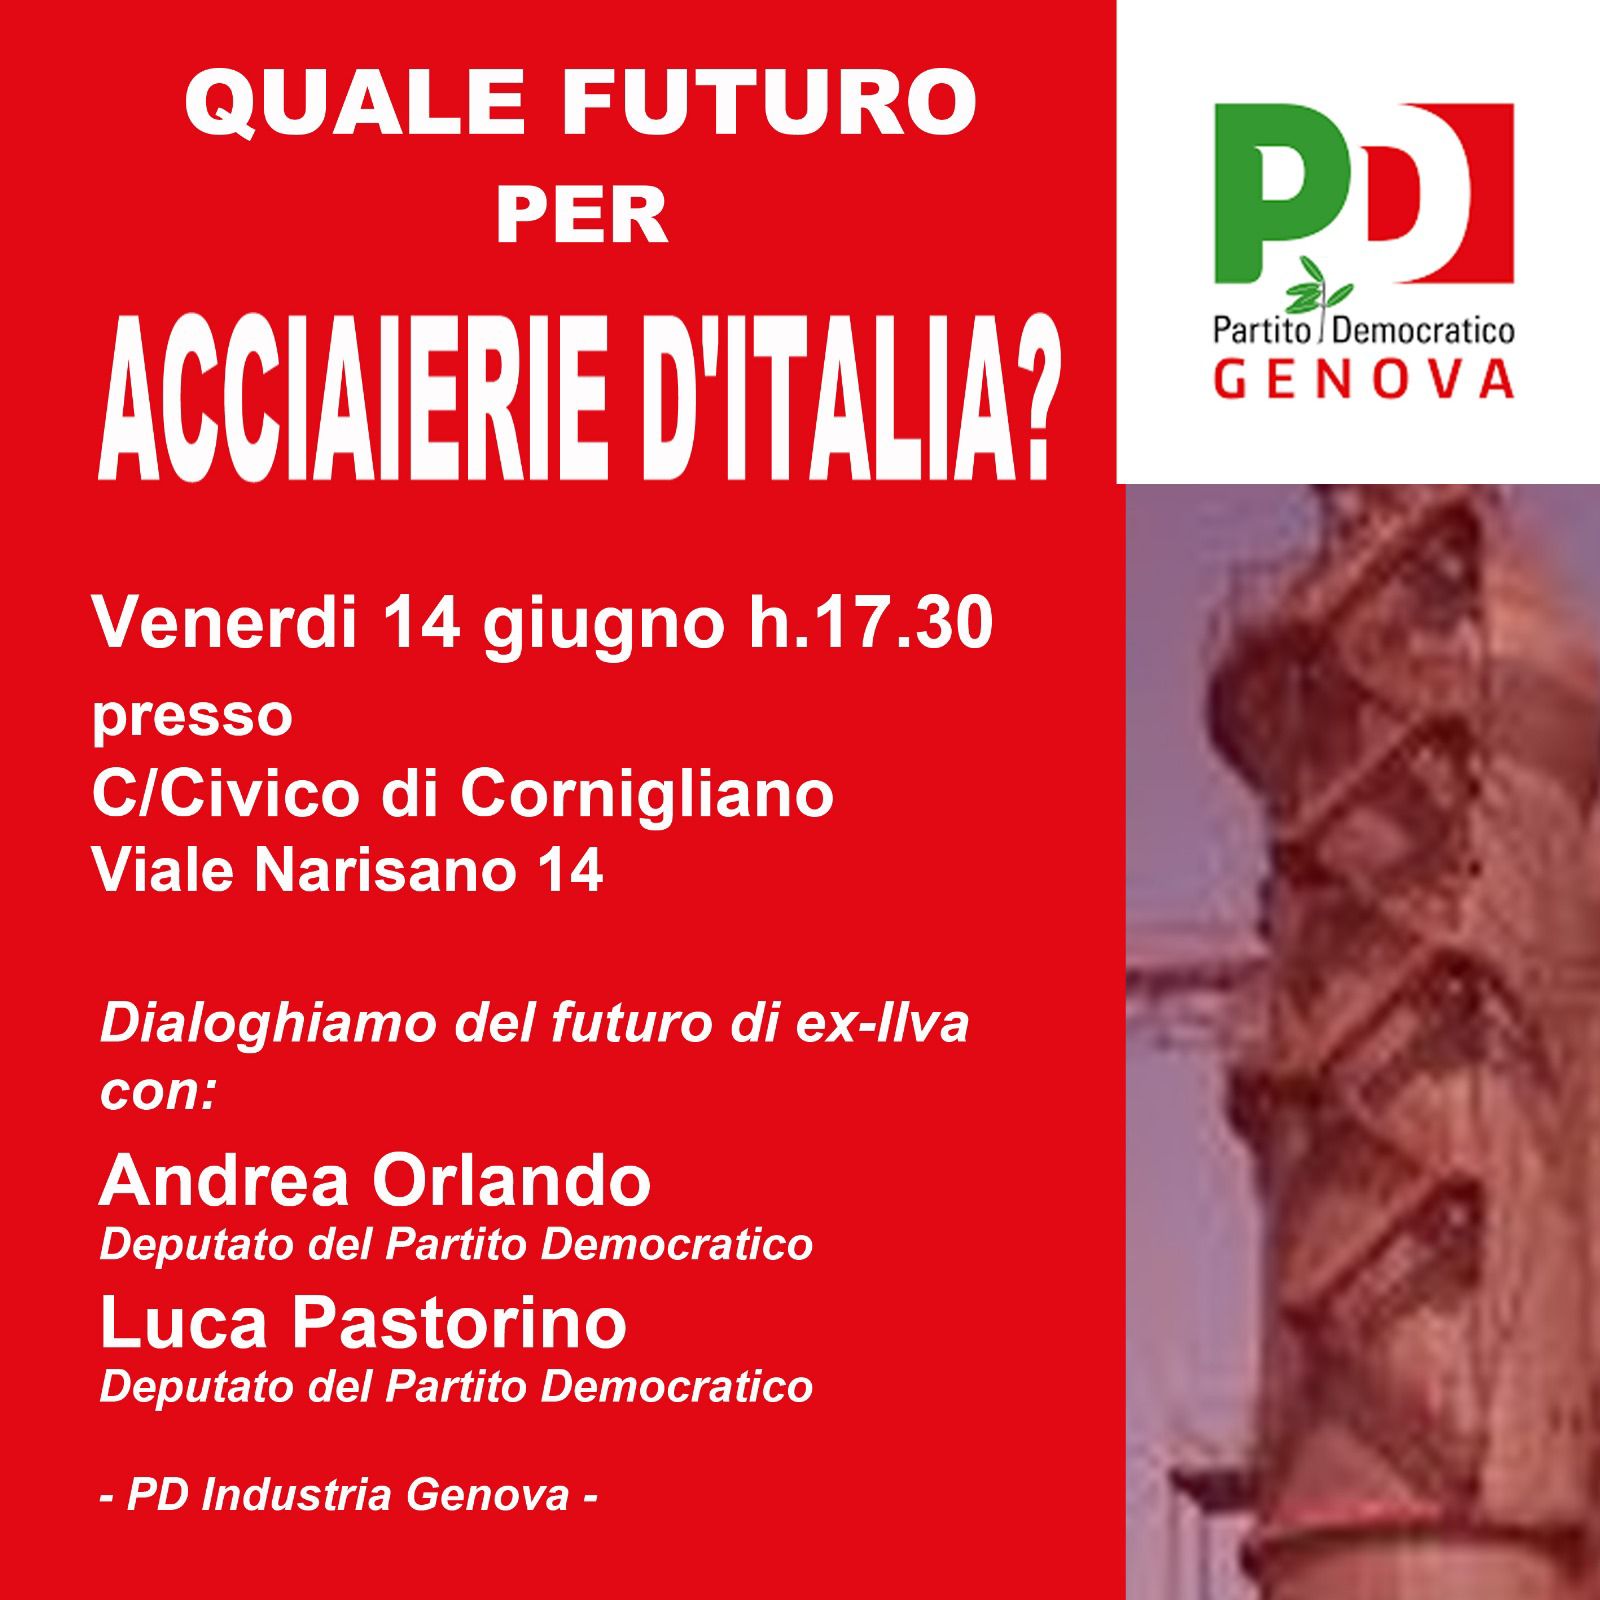 Venerdì 14 giugno, alle ore 17:30 presso il Centro Civico di Cornigliano, parlerò del futuro delle Acciaierie Ex Ilva nel corso di un incontro organizzato dal PD genovese.